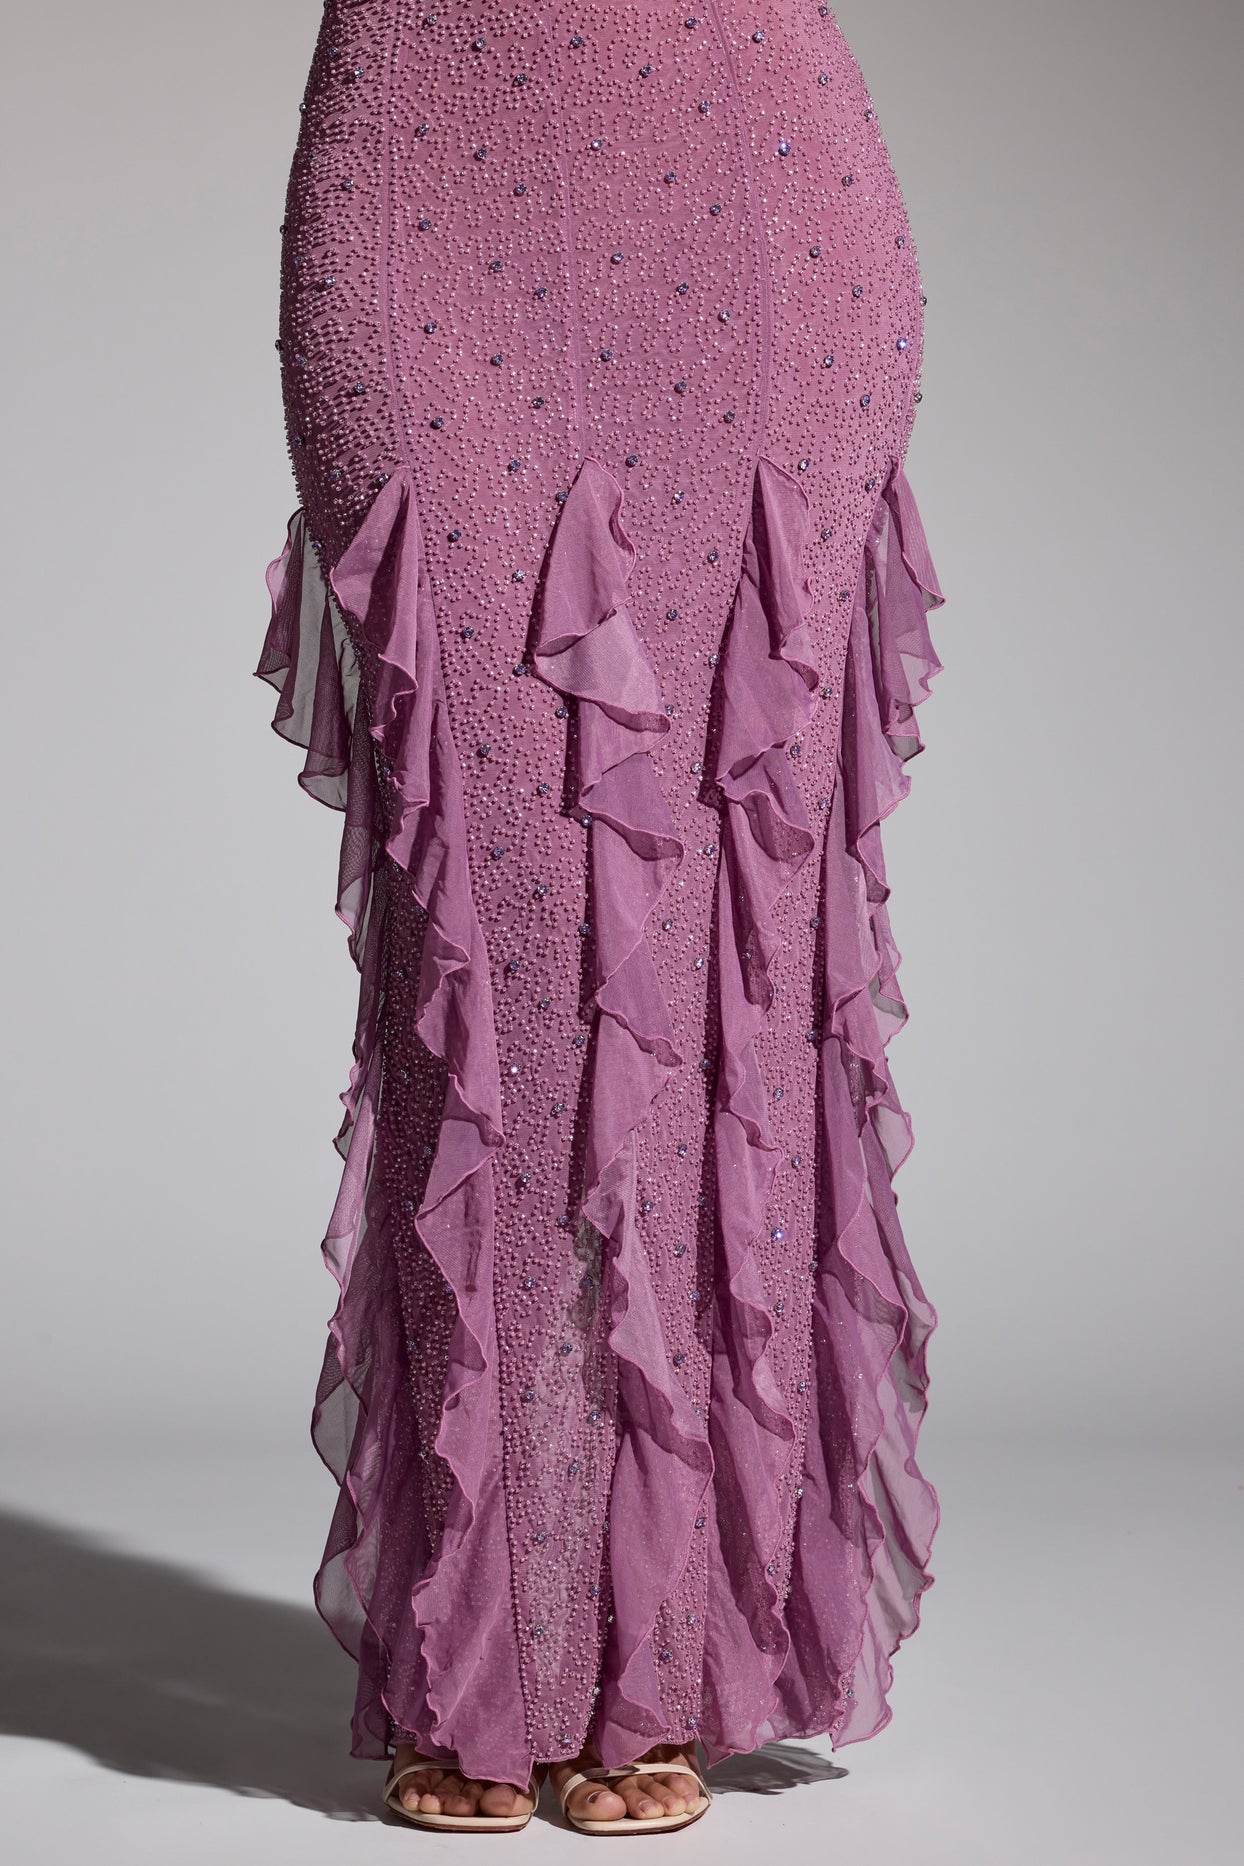 Ozdobna sukienka maxi z dekoltem typu halter i falbaną w kolorze winogron